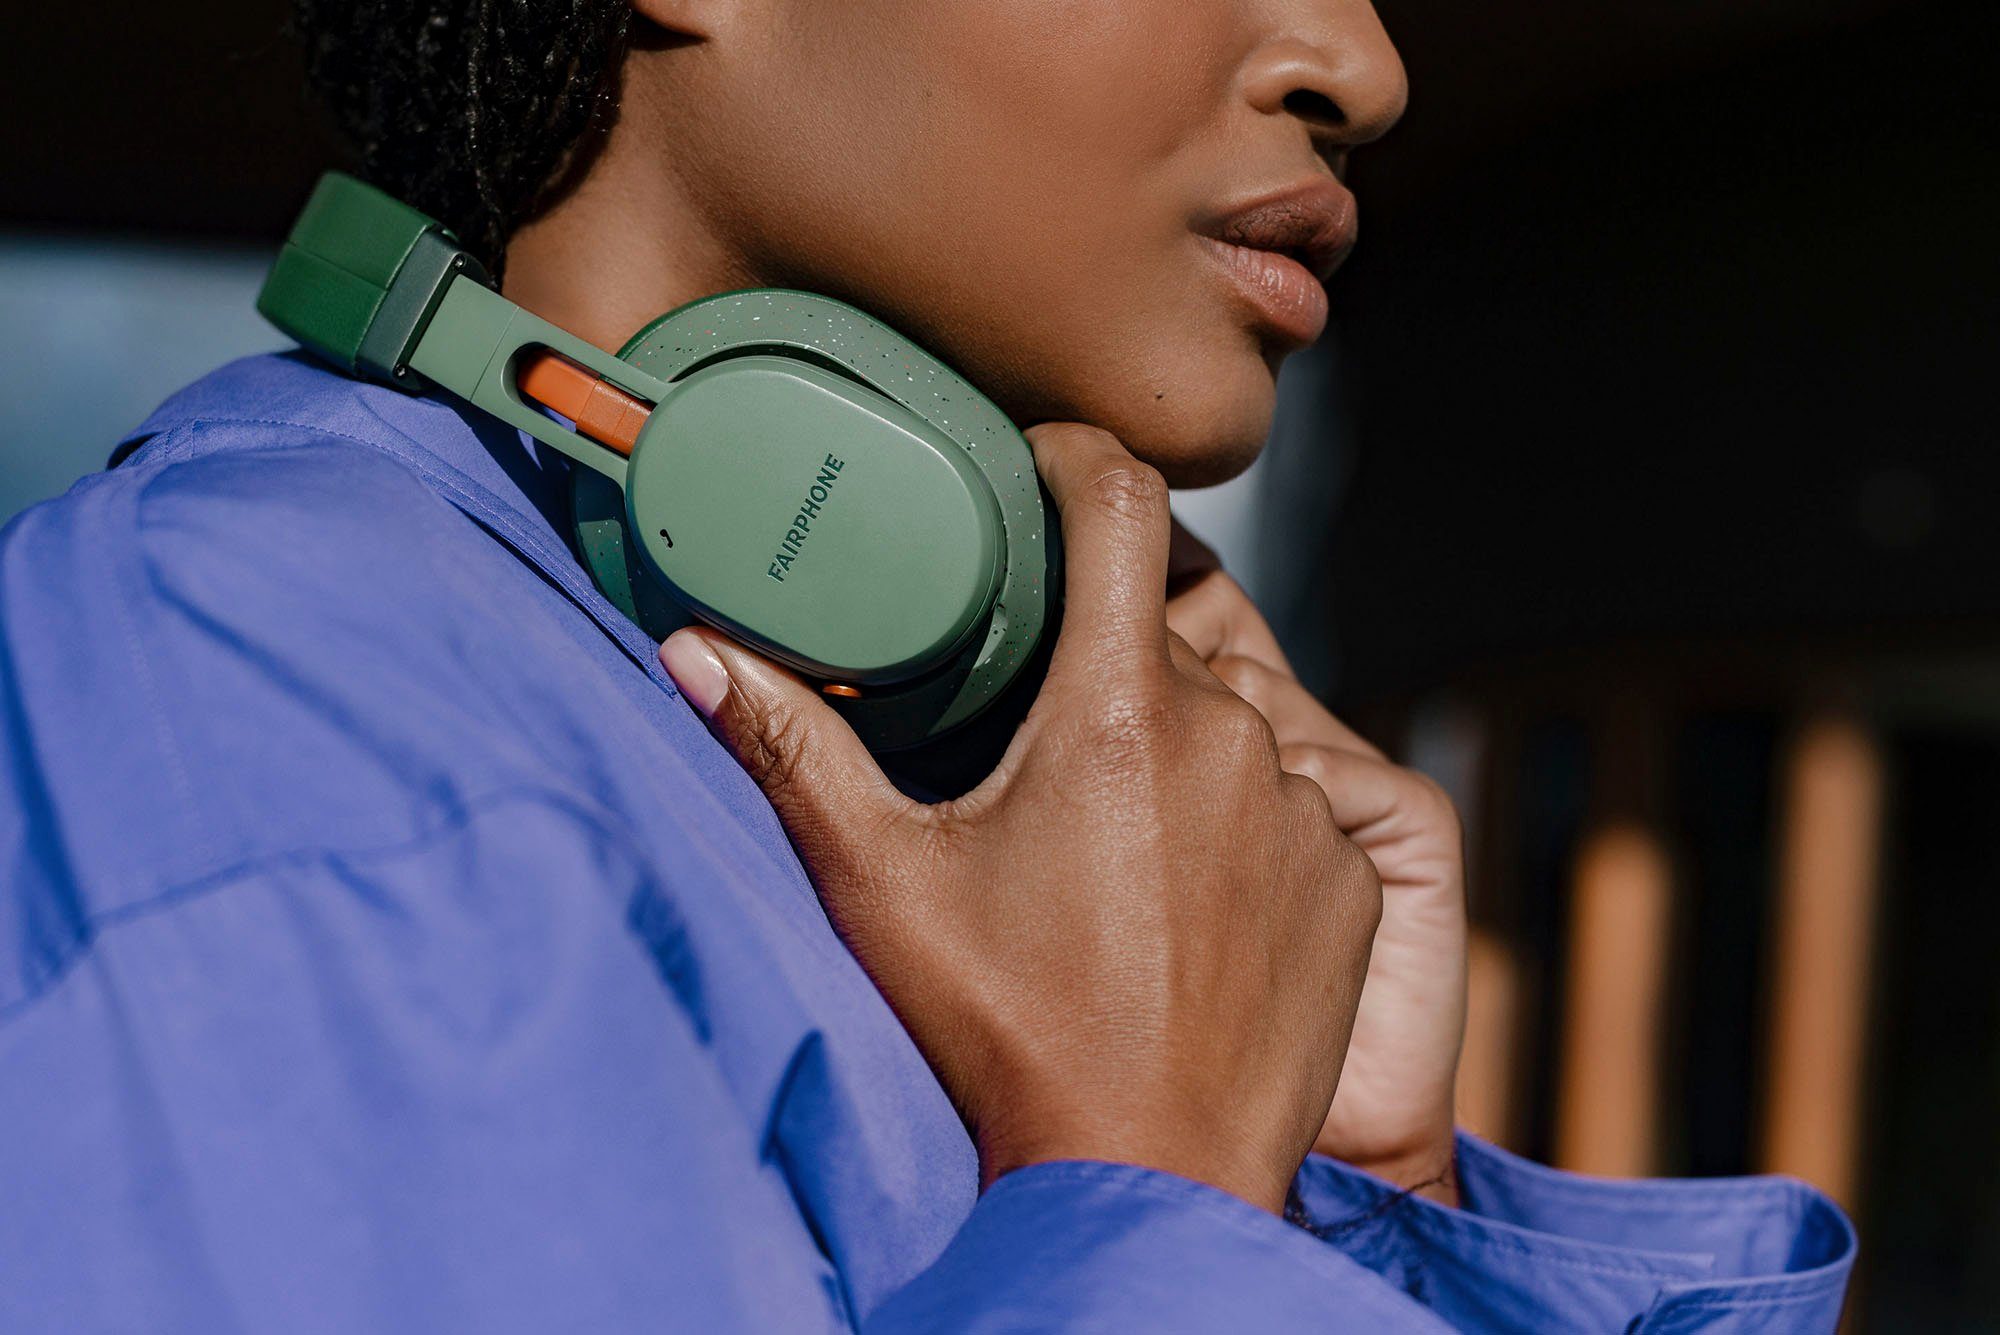 Fairbuds (ANC), Cancelling (Active Fairphone Bluetooth) grün Over-Ear-Kopfhörer XL Noise